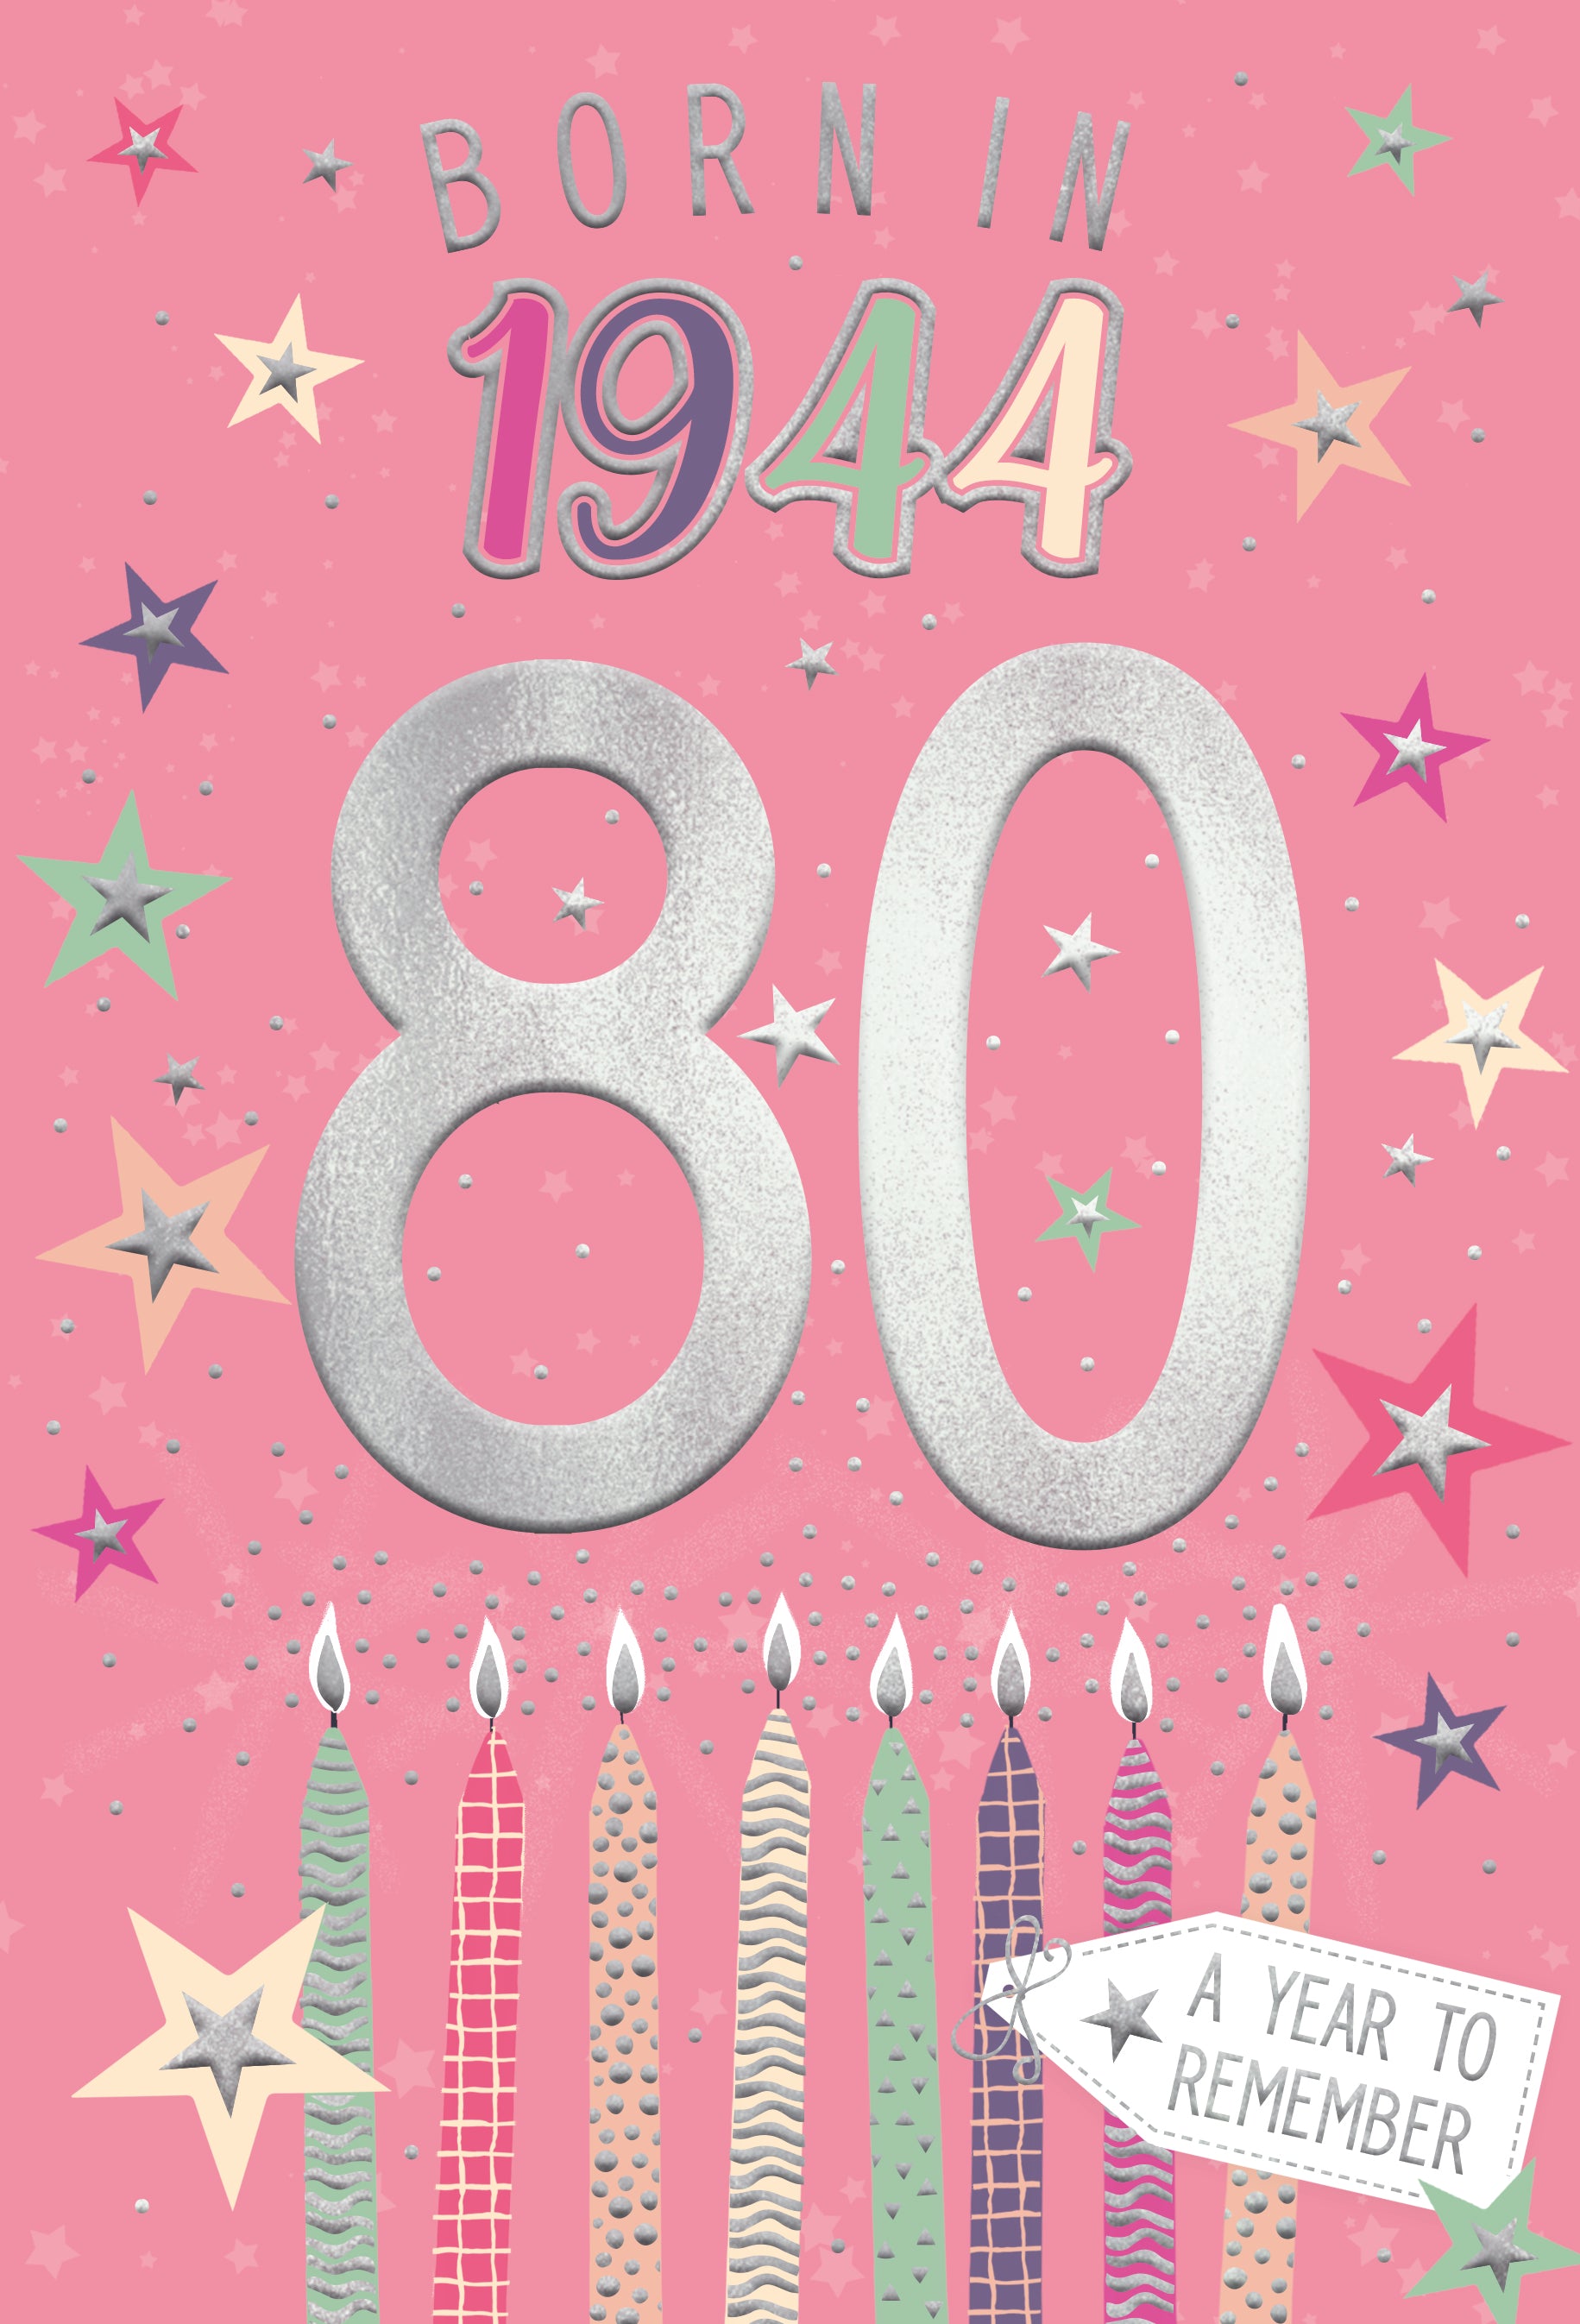 80th birthday card- born in 1944